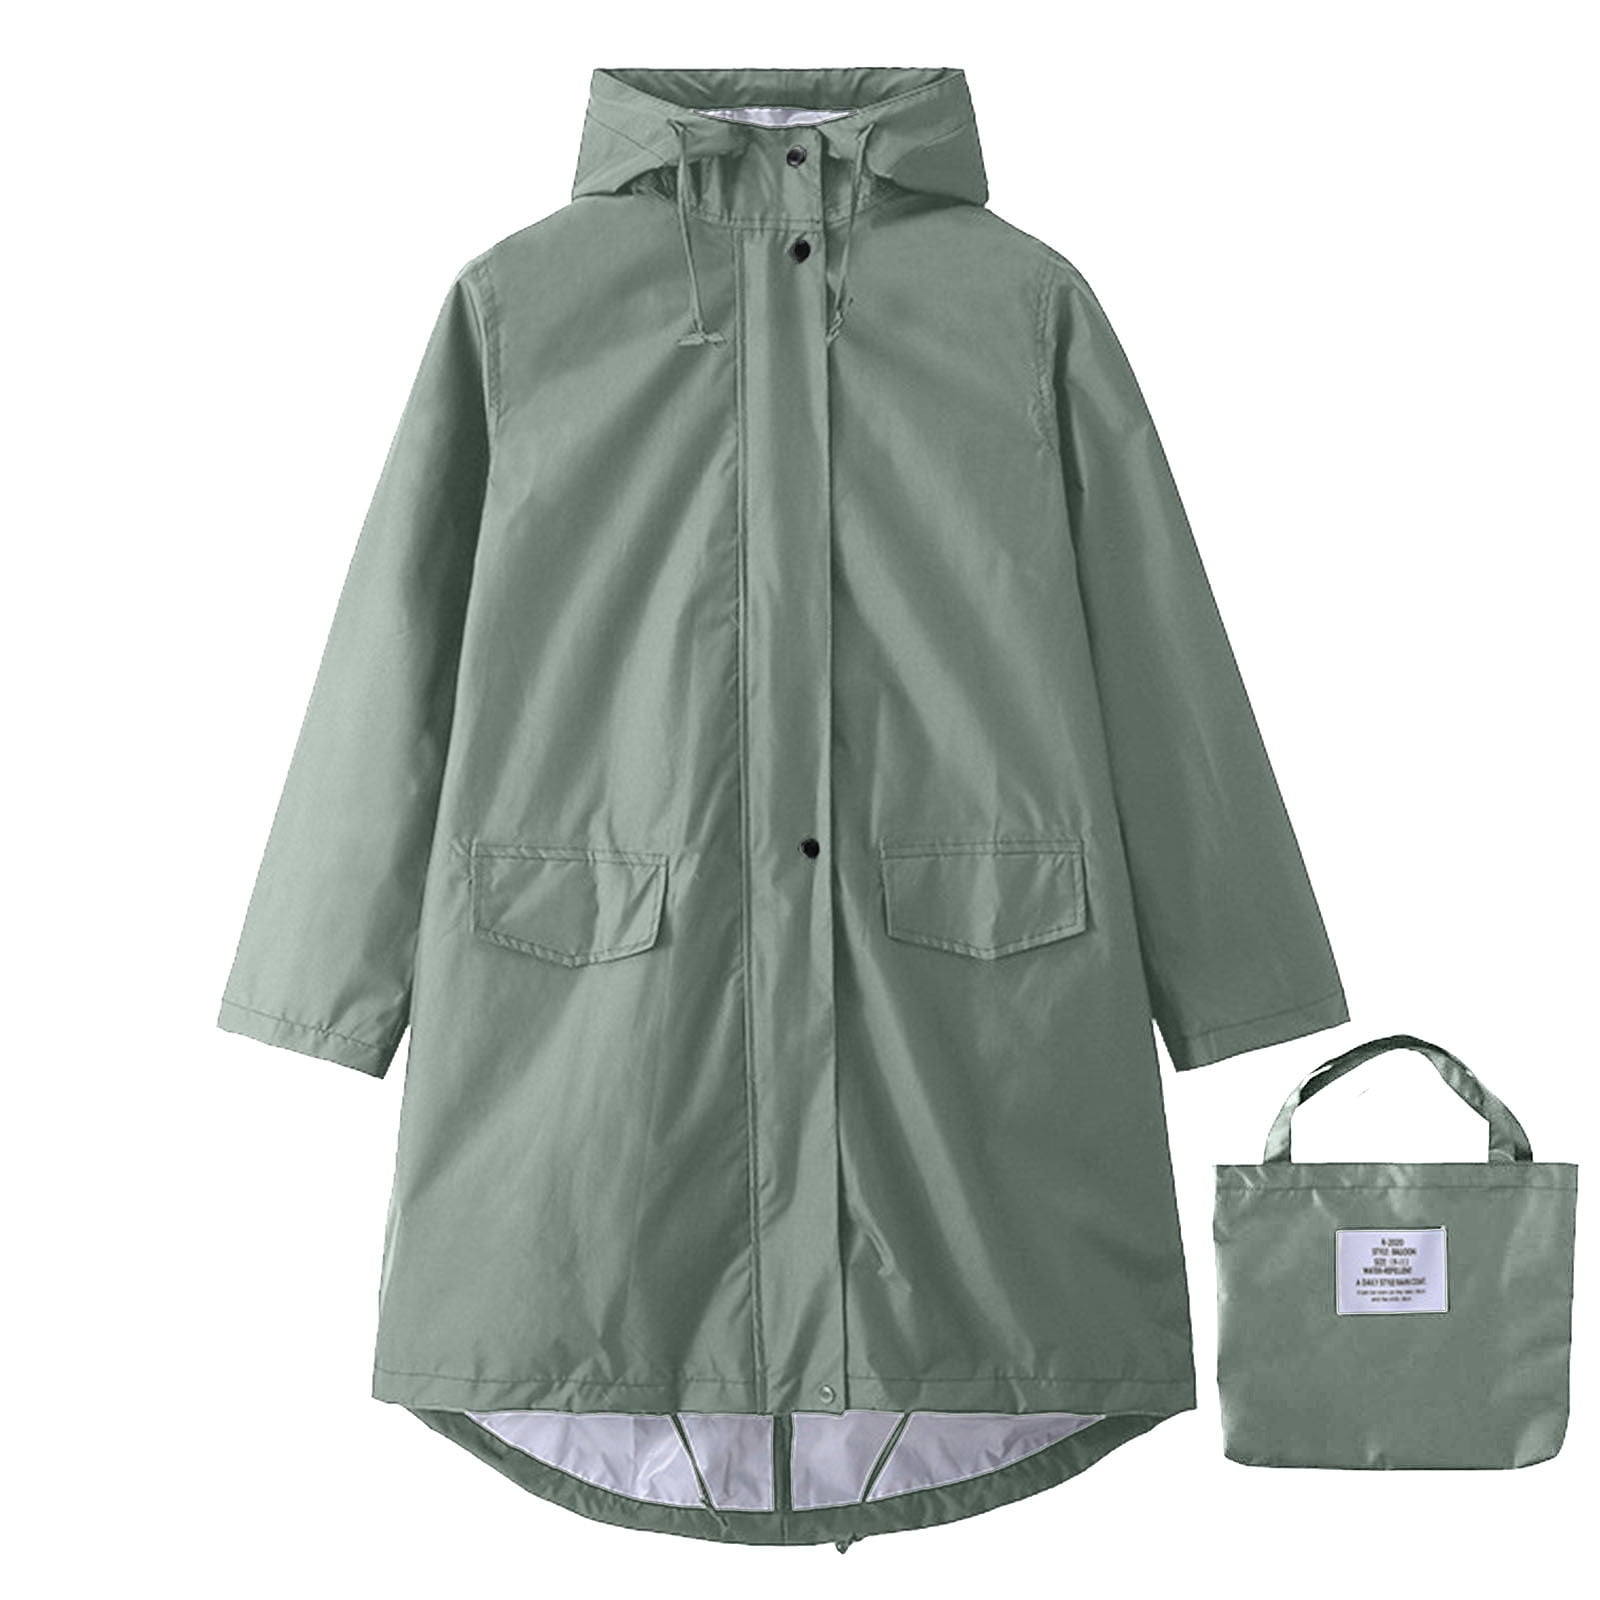 Mens Long Raincoat with Hood Waterproof Rainwear Packable Outdoor